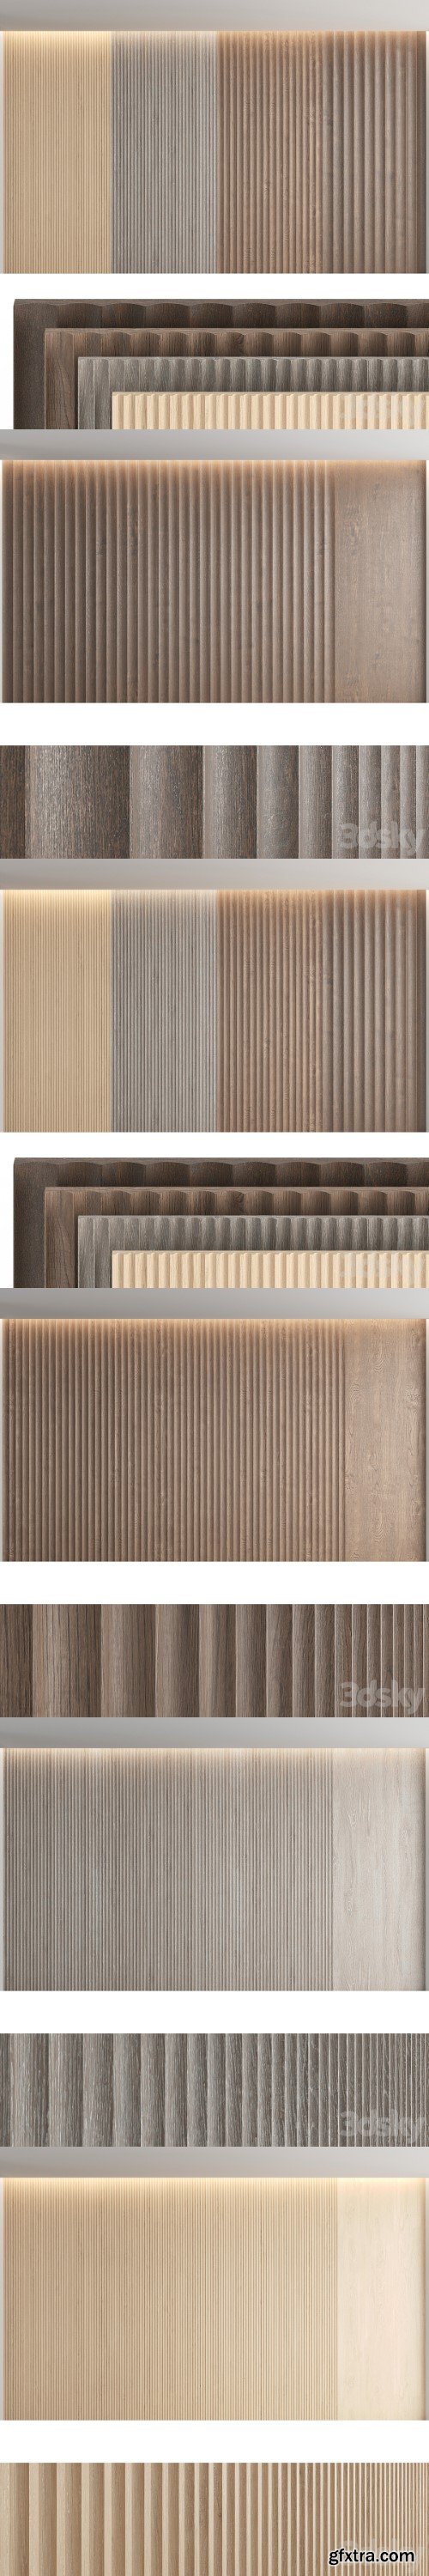 Wood panels_set7